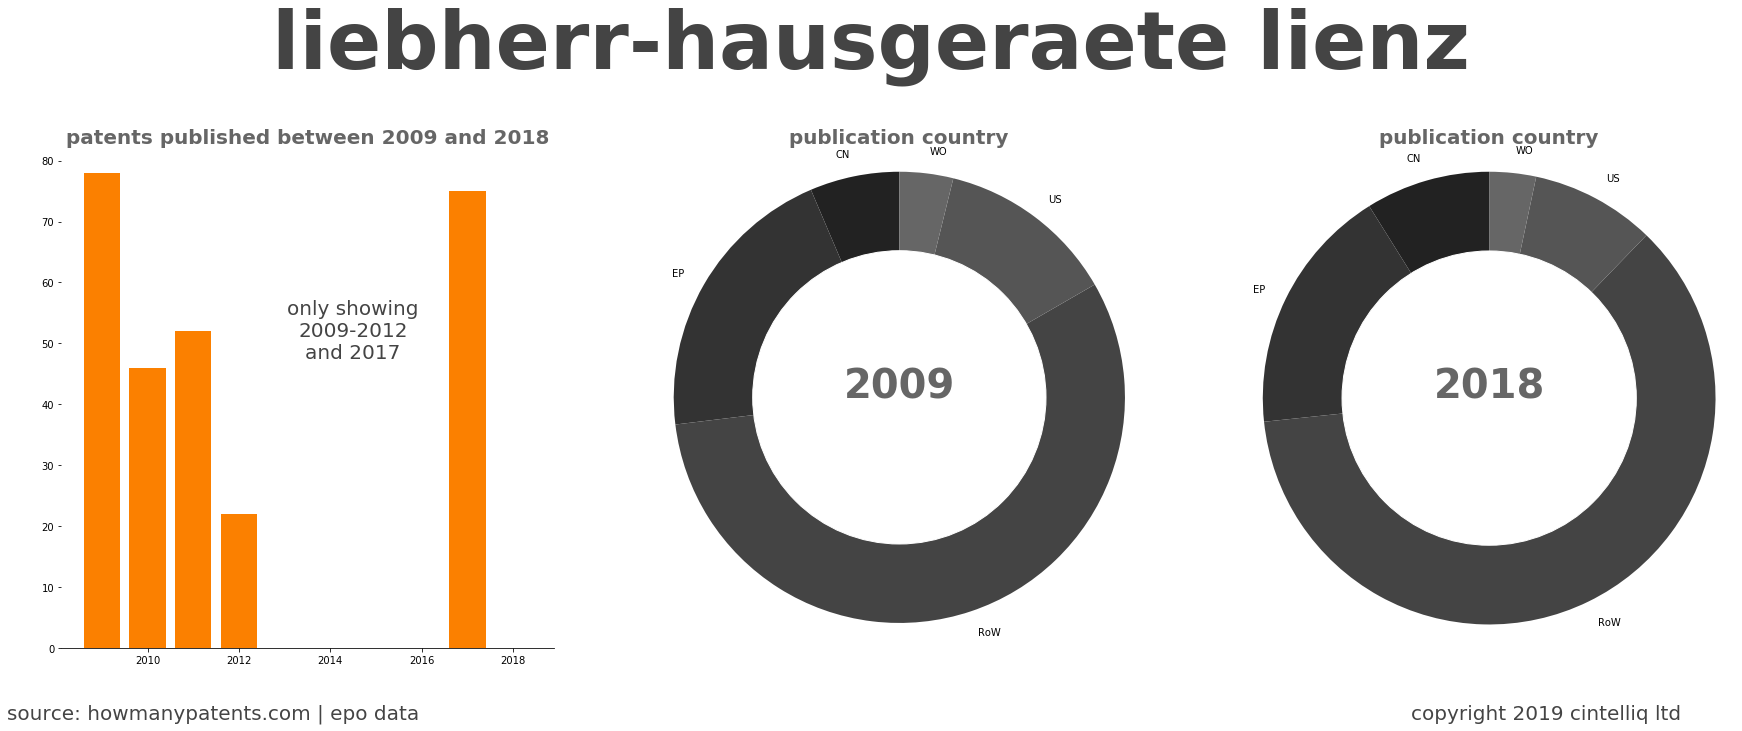 summary of patents for Liebherr-Hausgeraete Lienz